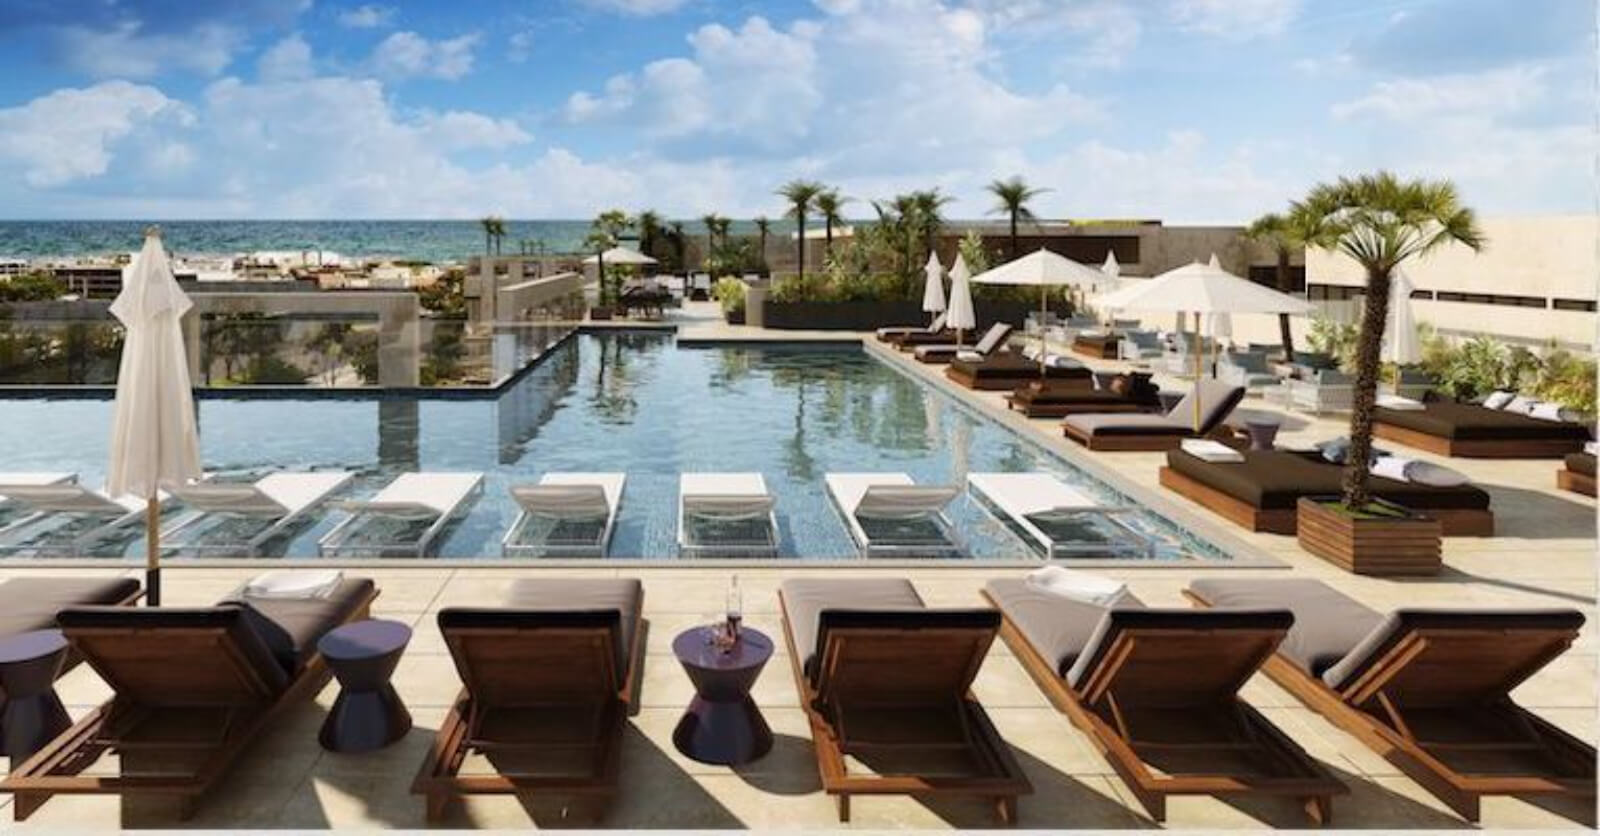 Condo with beach club, golf, pool, for sale in Playa del Carmen.